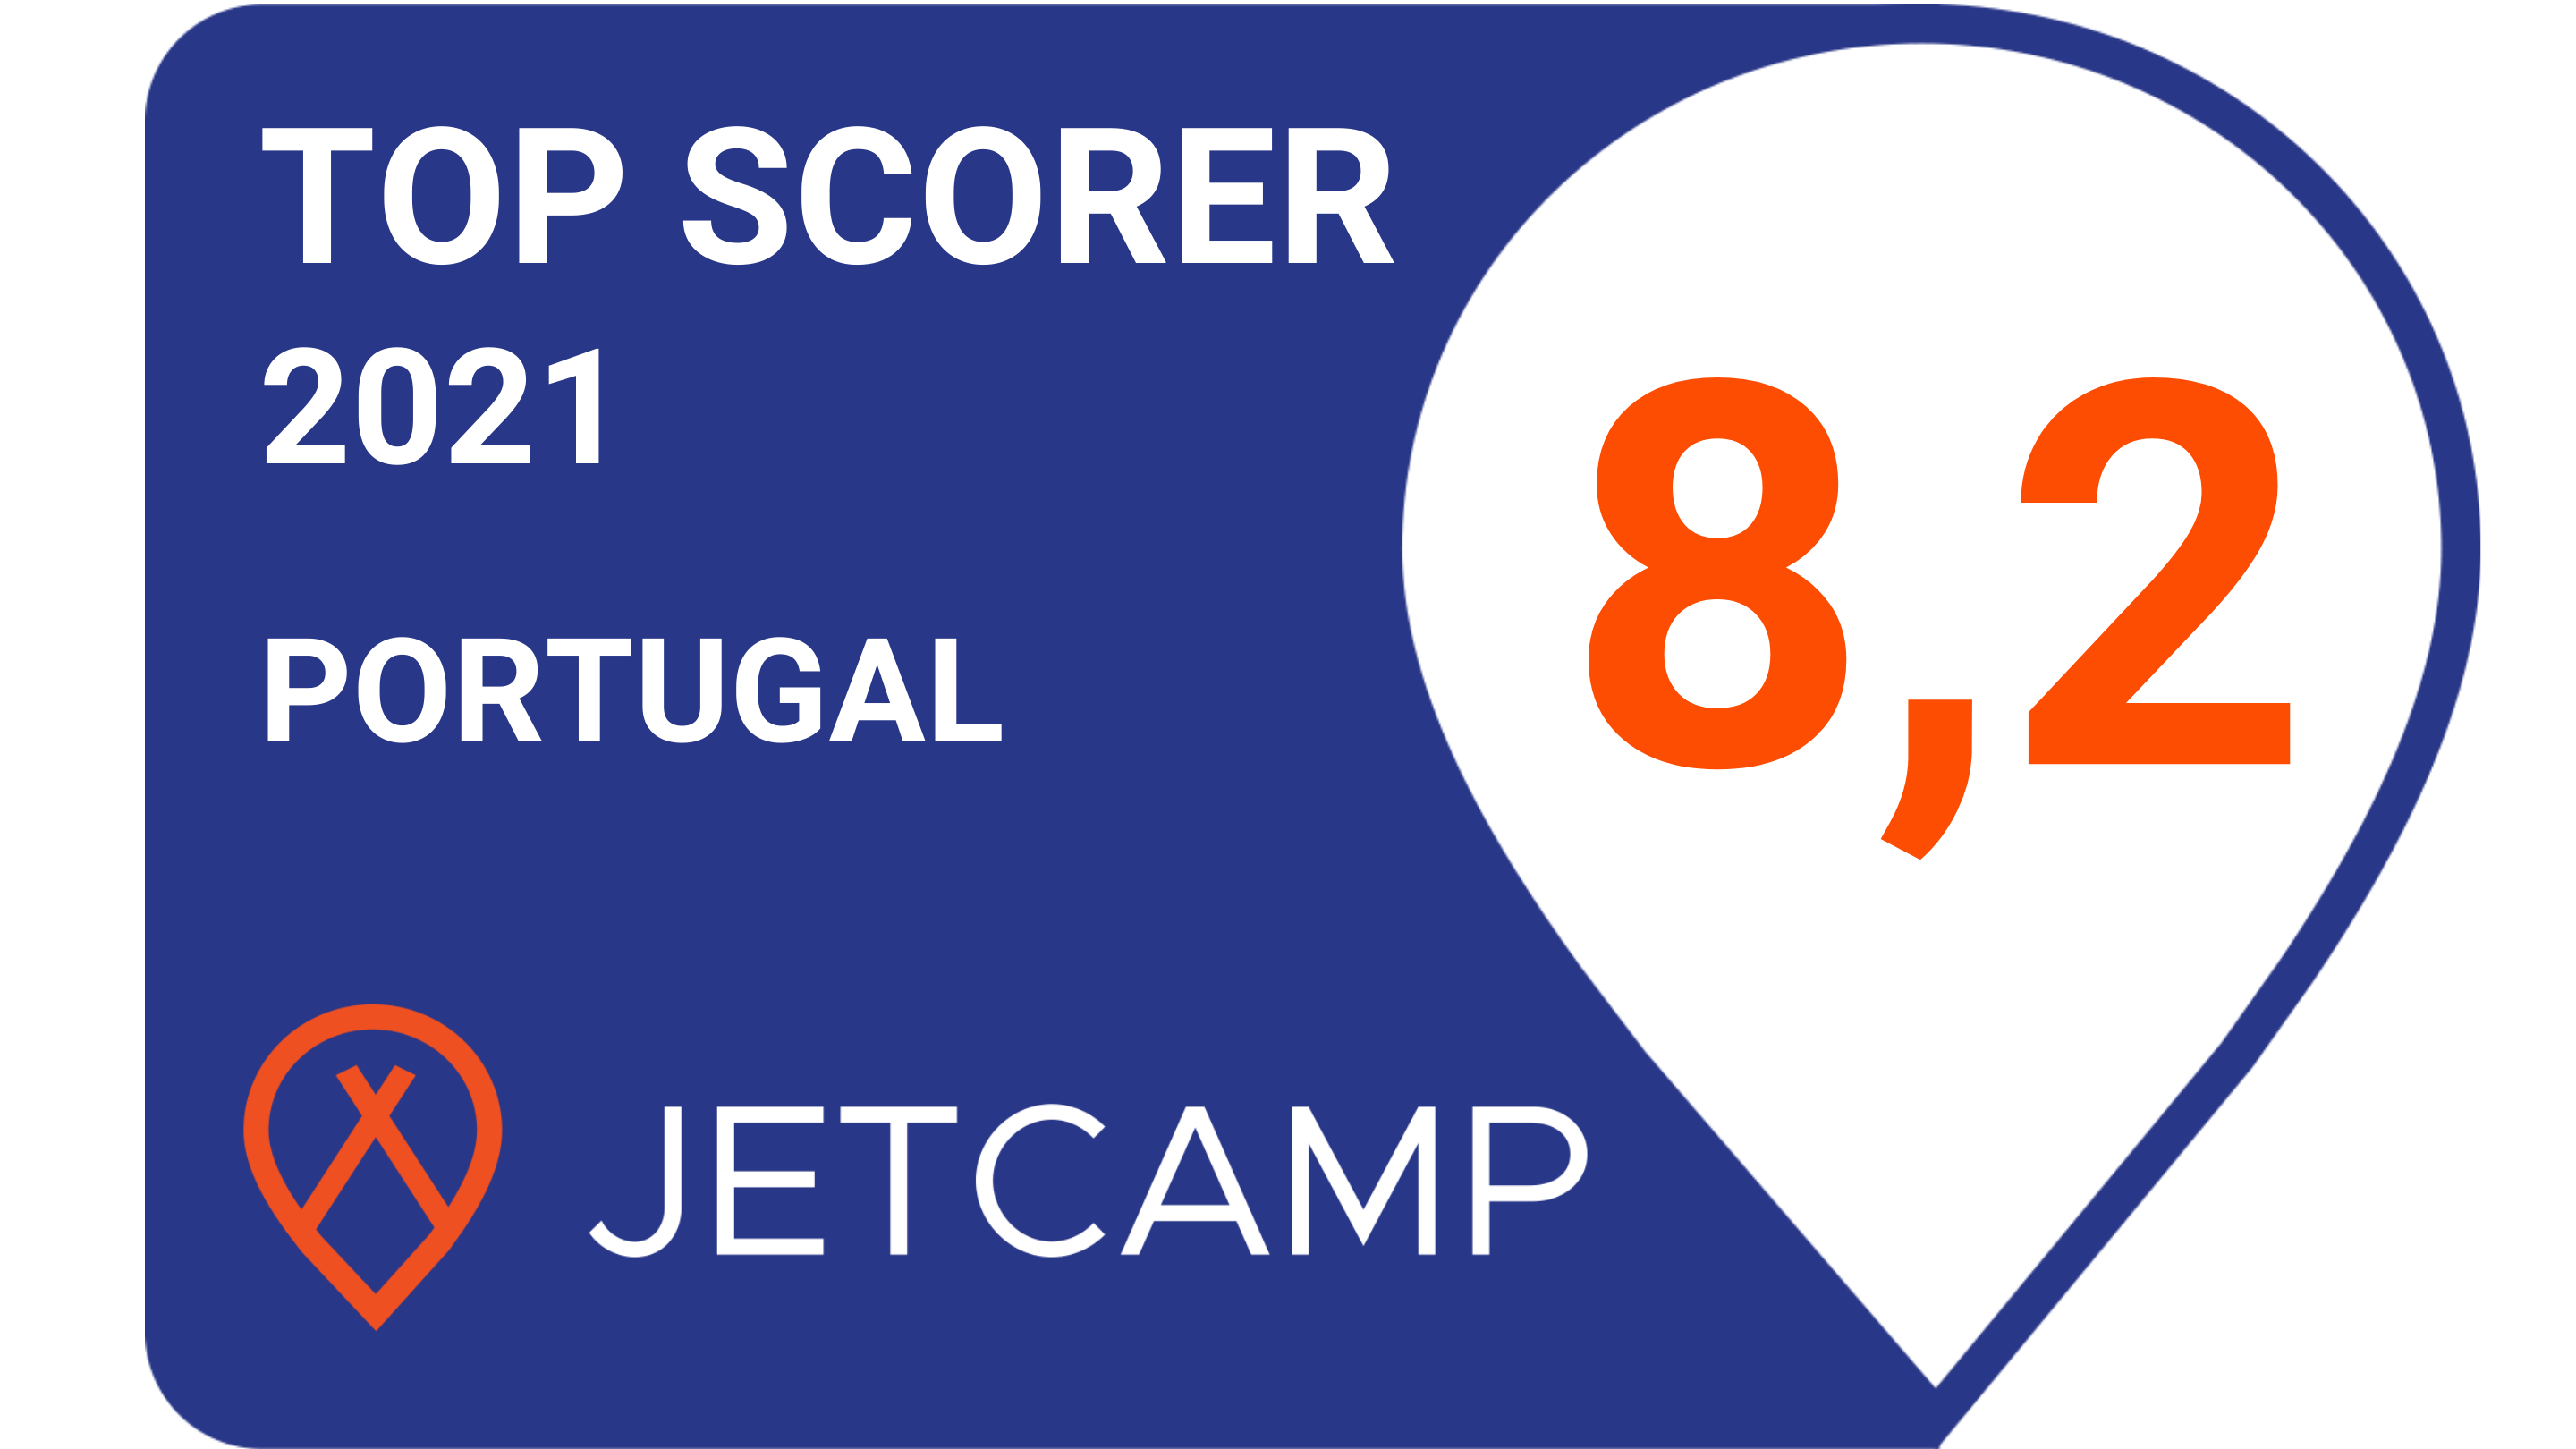 JetCamp Top Scorer S.Pedro